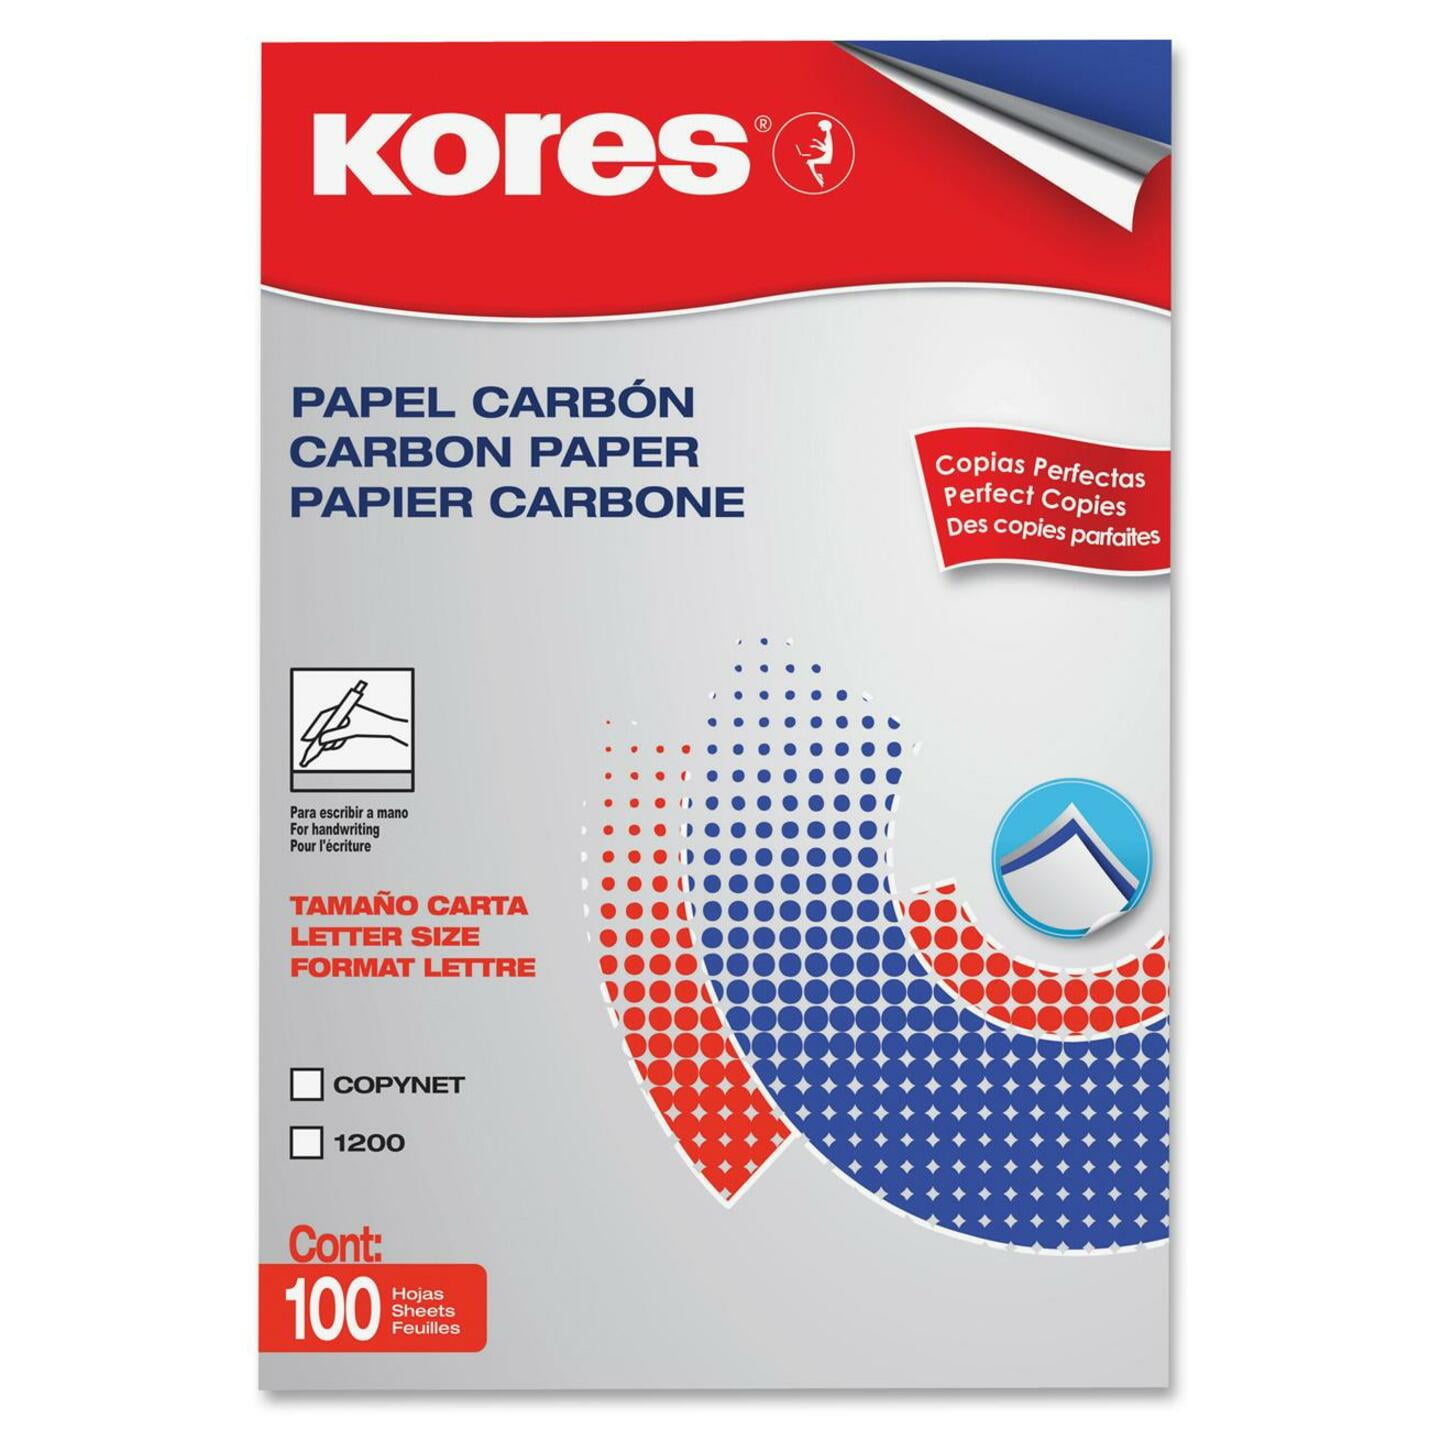 KORES carbon unruled A4 150 gsm Carbon Paper - Carbon Paper